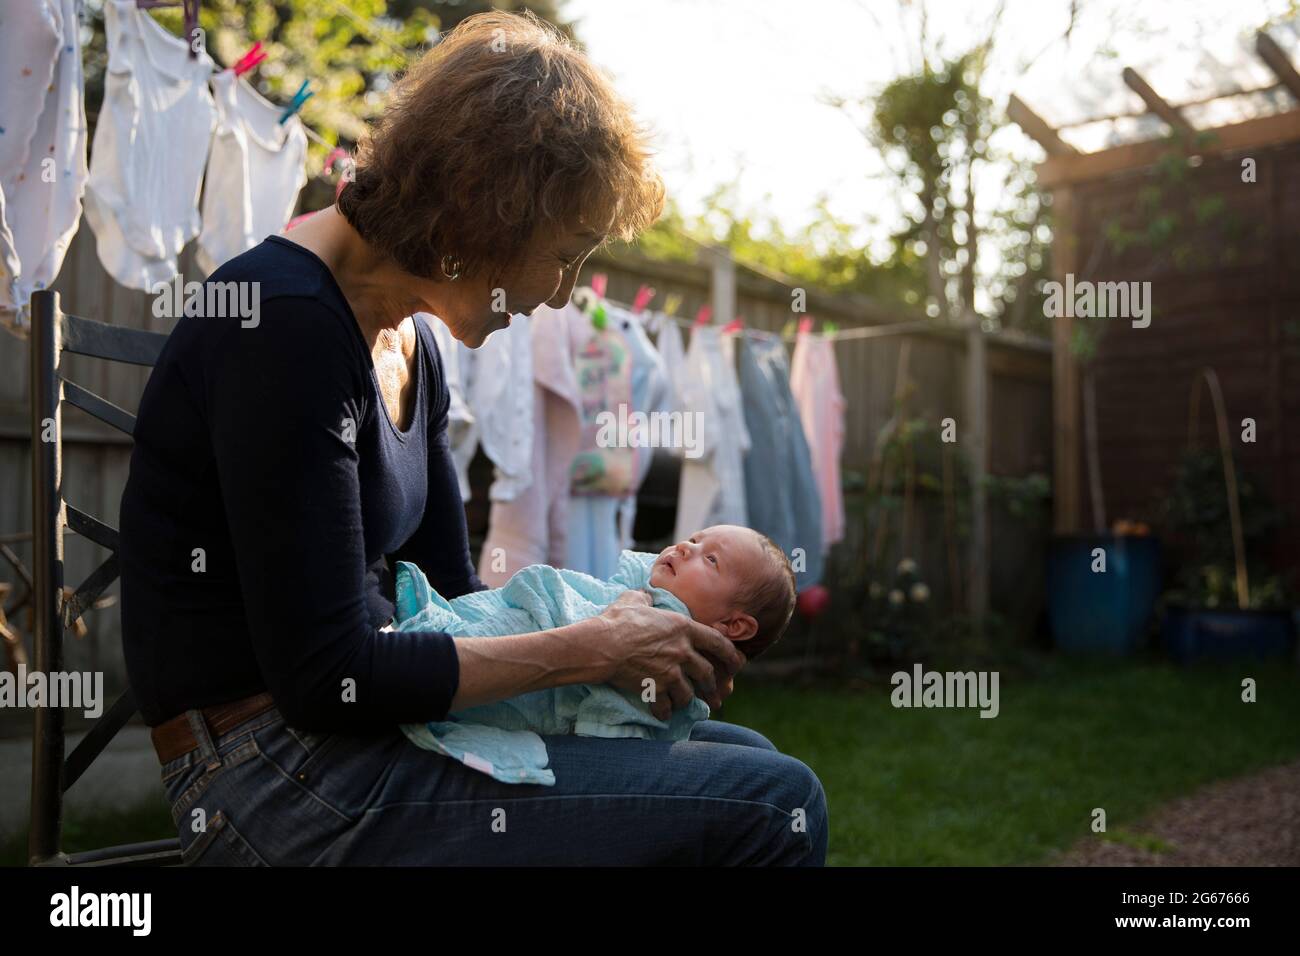 Une grand-mère avec un bébé de quelques semaines Banque D'Images